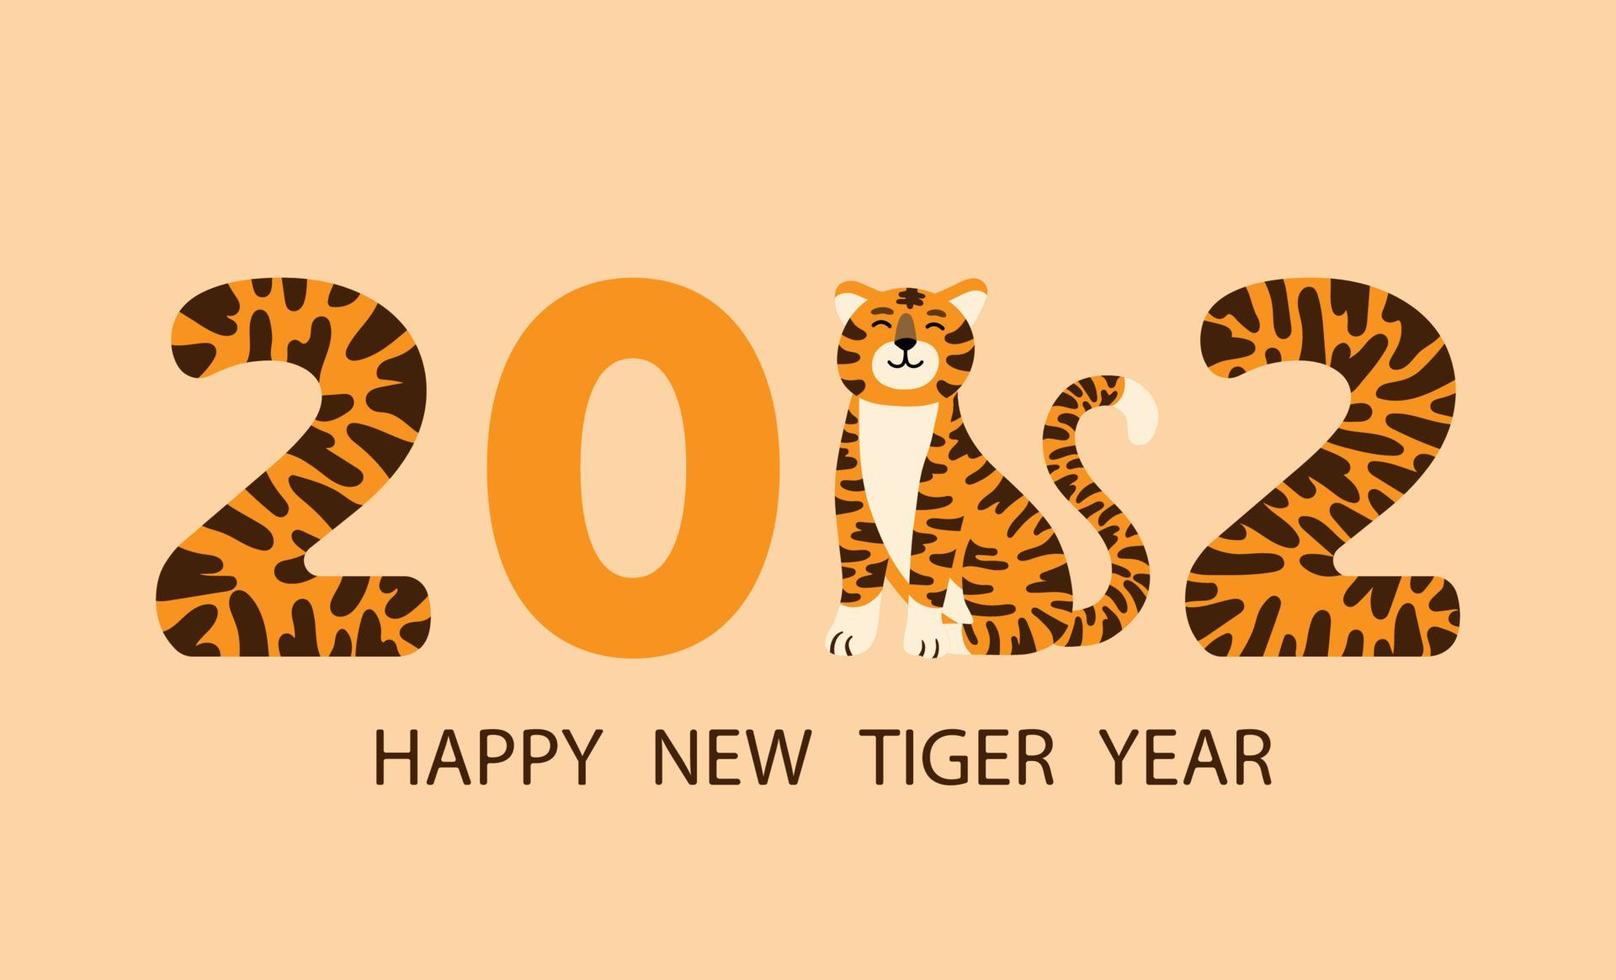 Feliz año nuevo chino 2022 tarjeta de felicitación o pancarta con dibujos animados divertidos cara de tigre y dígitos de año rayados. vector dibujado a mano ilustración plana